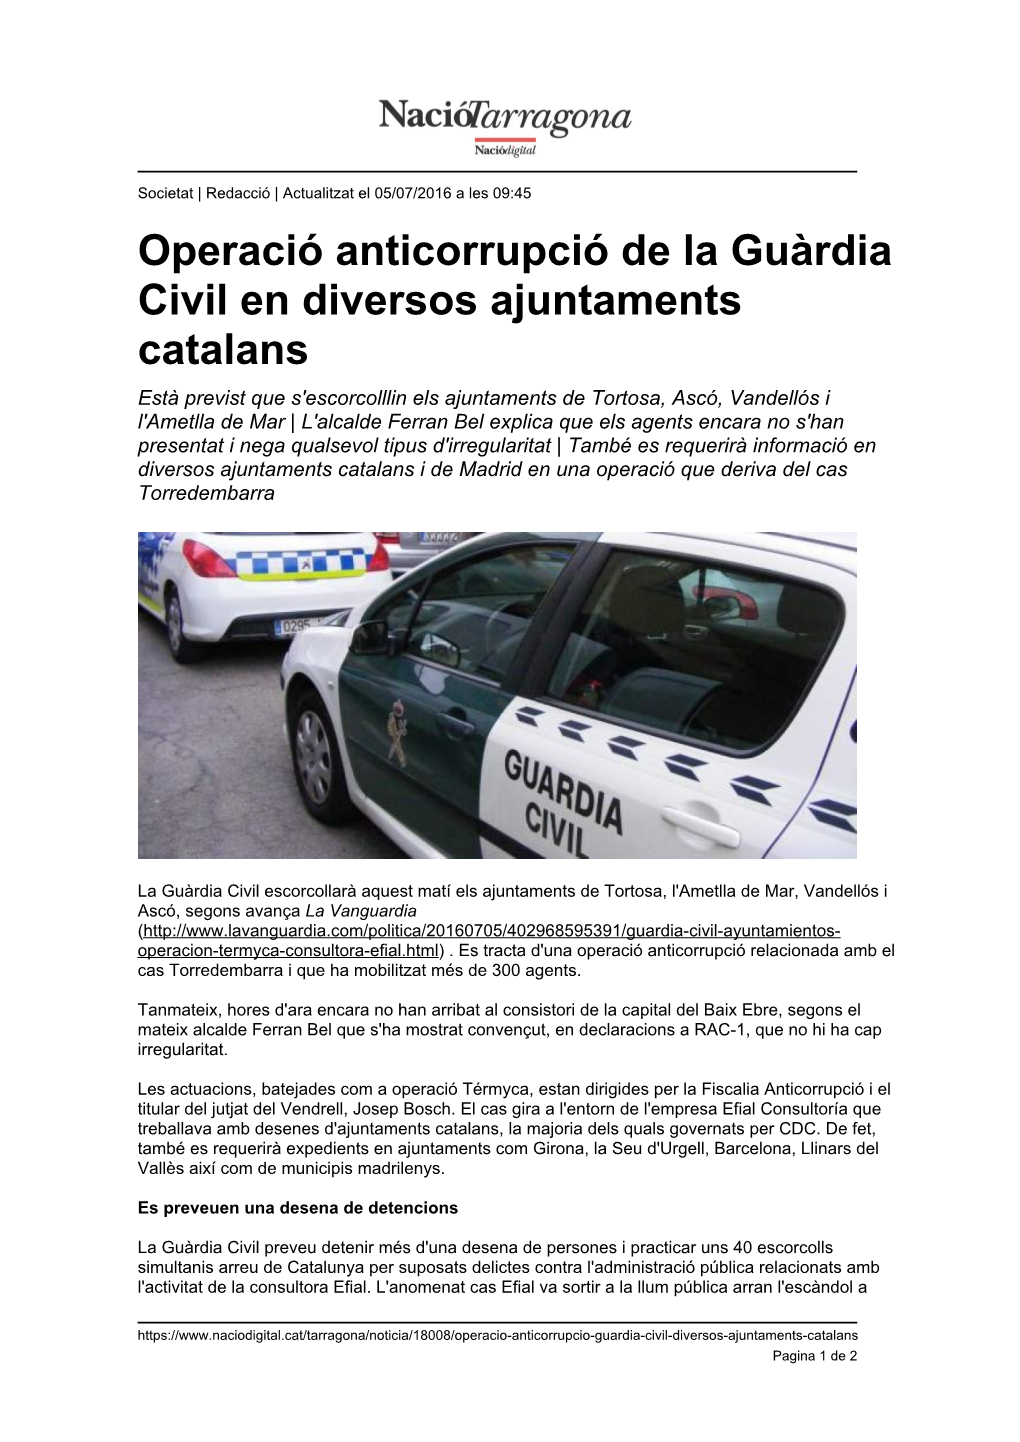 Operació Anticorrupció De La Guàrdia Civil En Diversos Ajuntaments